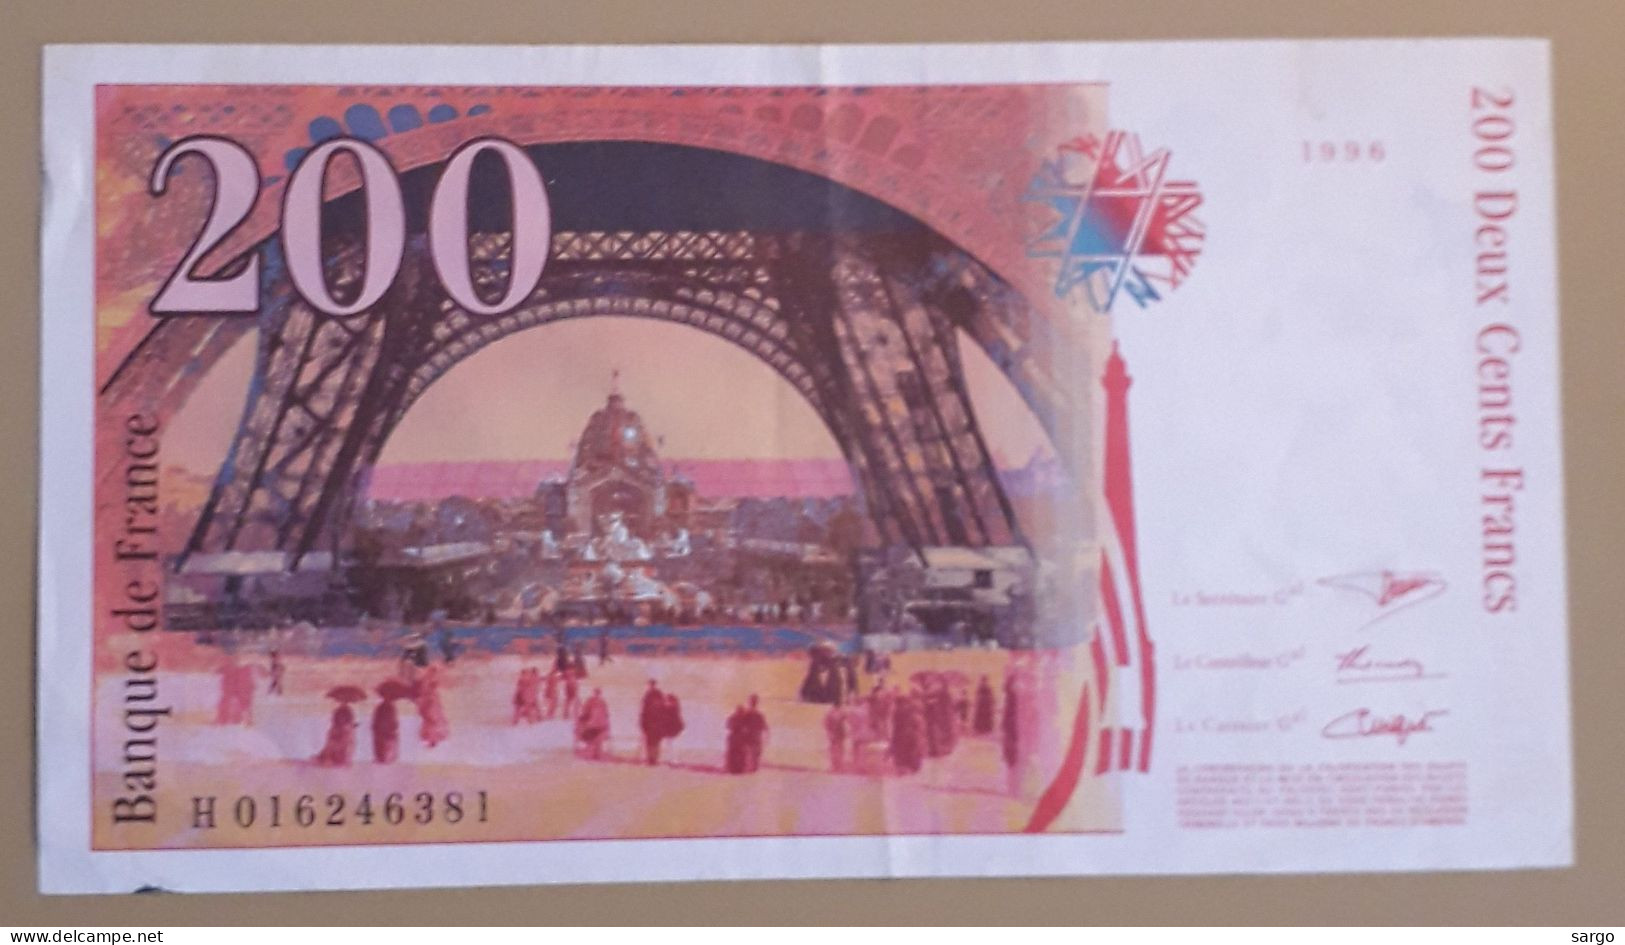 FRANCE - 200 FRANCS - 1996 - CIRC - P 159 - BANKNOTES - PAPER MONEY - CARTAMONETA - - 200 F 1995-1999 ''Eiffel''